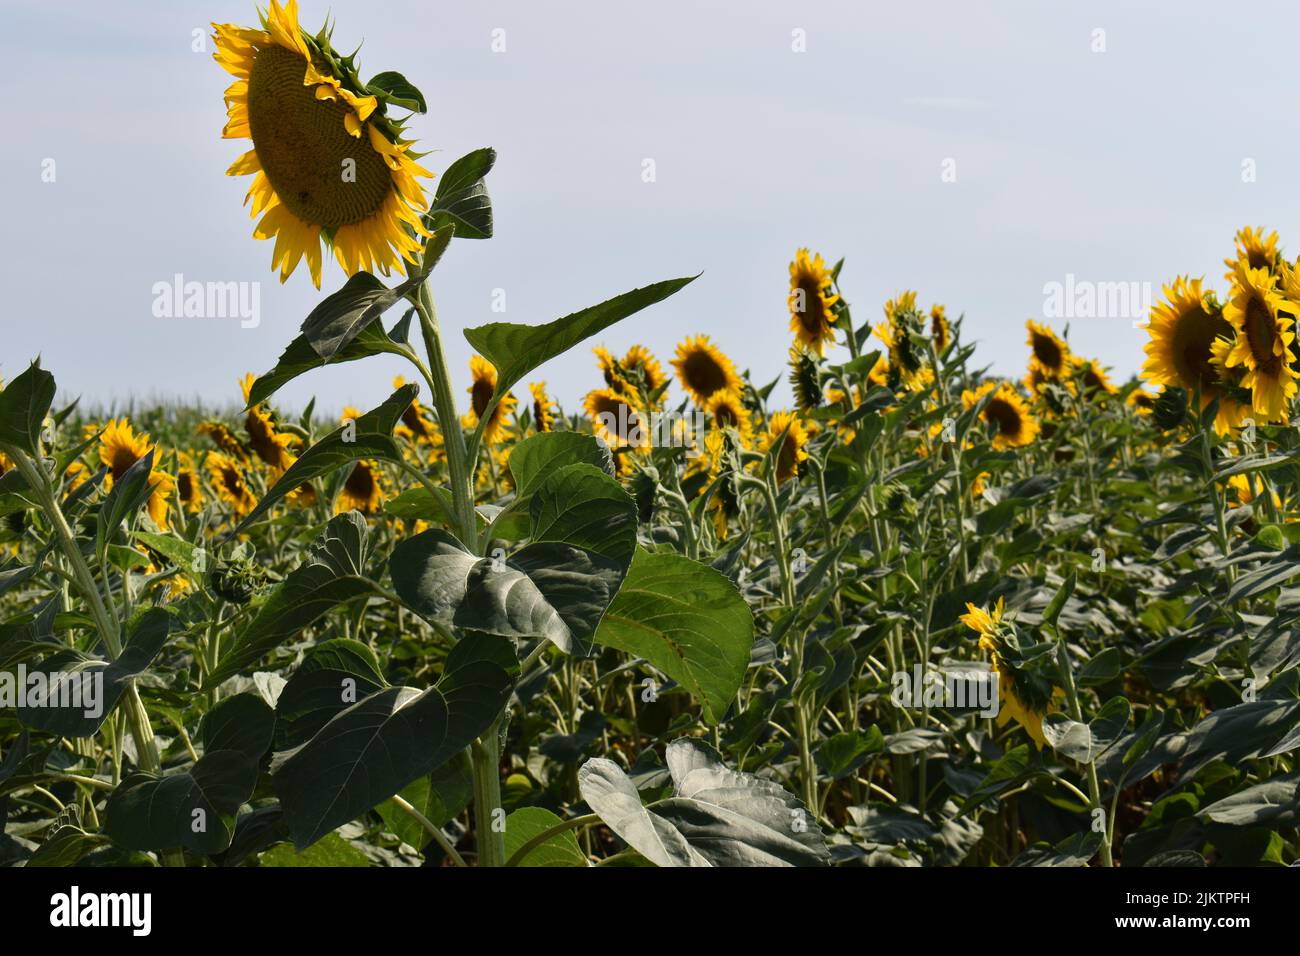 Ein schönes Sonnenblumenfeld in voller Blüte an einem sonnigen Tag Stockfoto